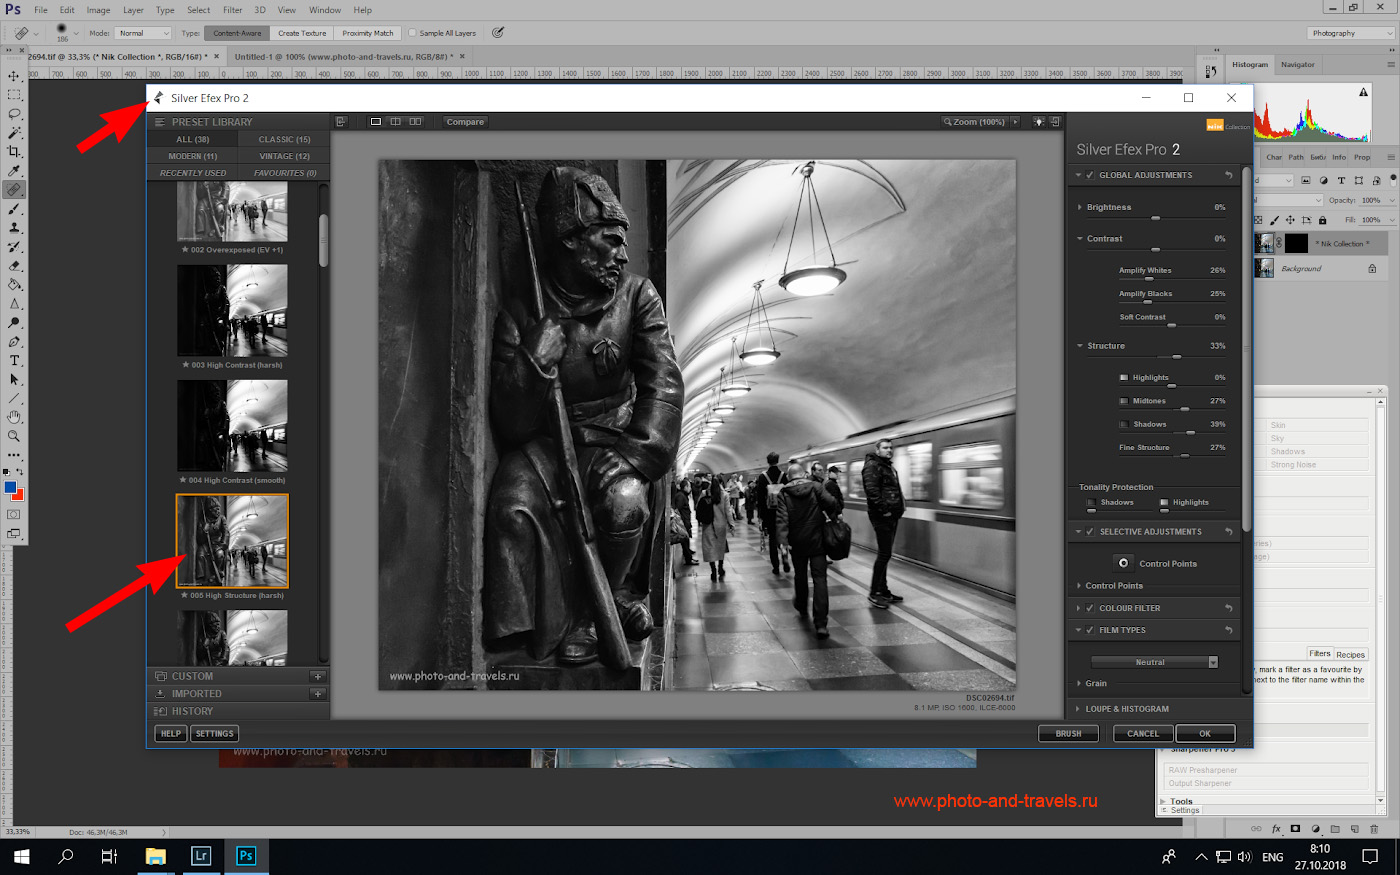 Фото 39. Применение плагина «Silver Efex Pro 2» для создания черно-белого изображения в «Photoshop». Справа на панели можно настроить разные параметры картинки.